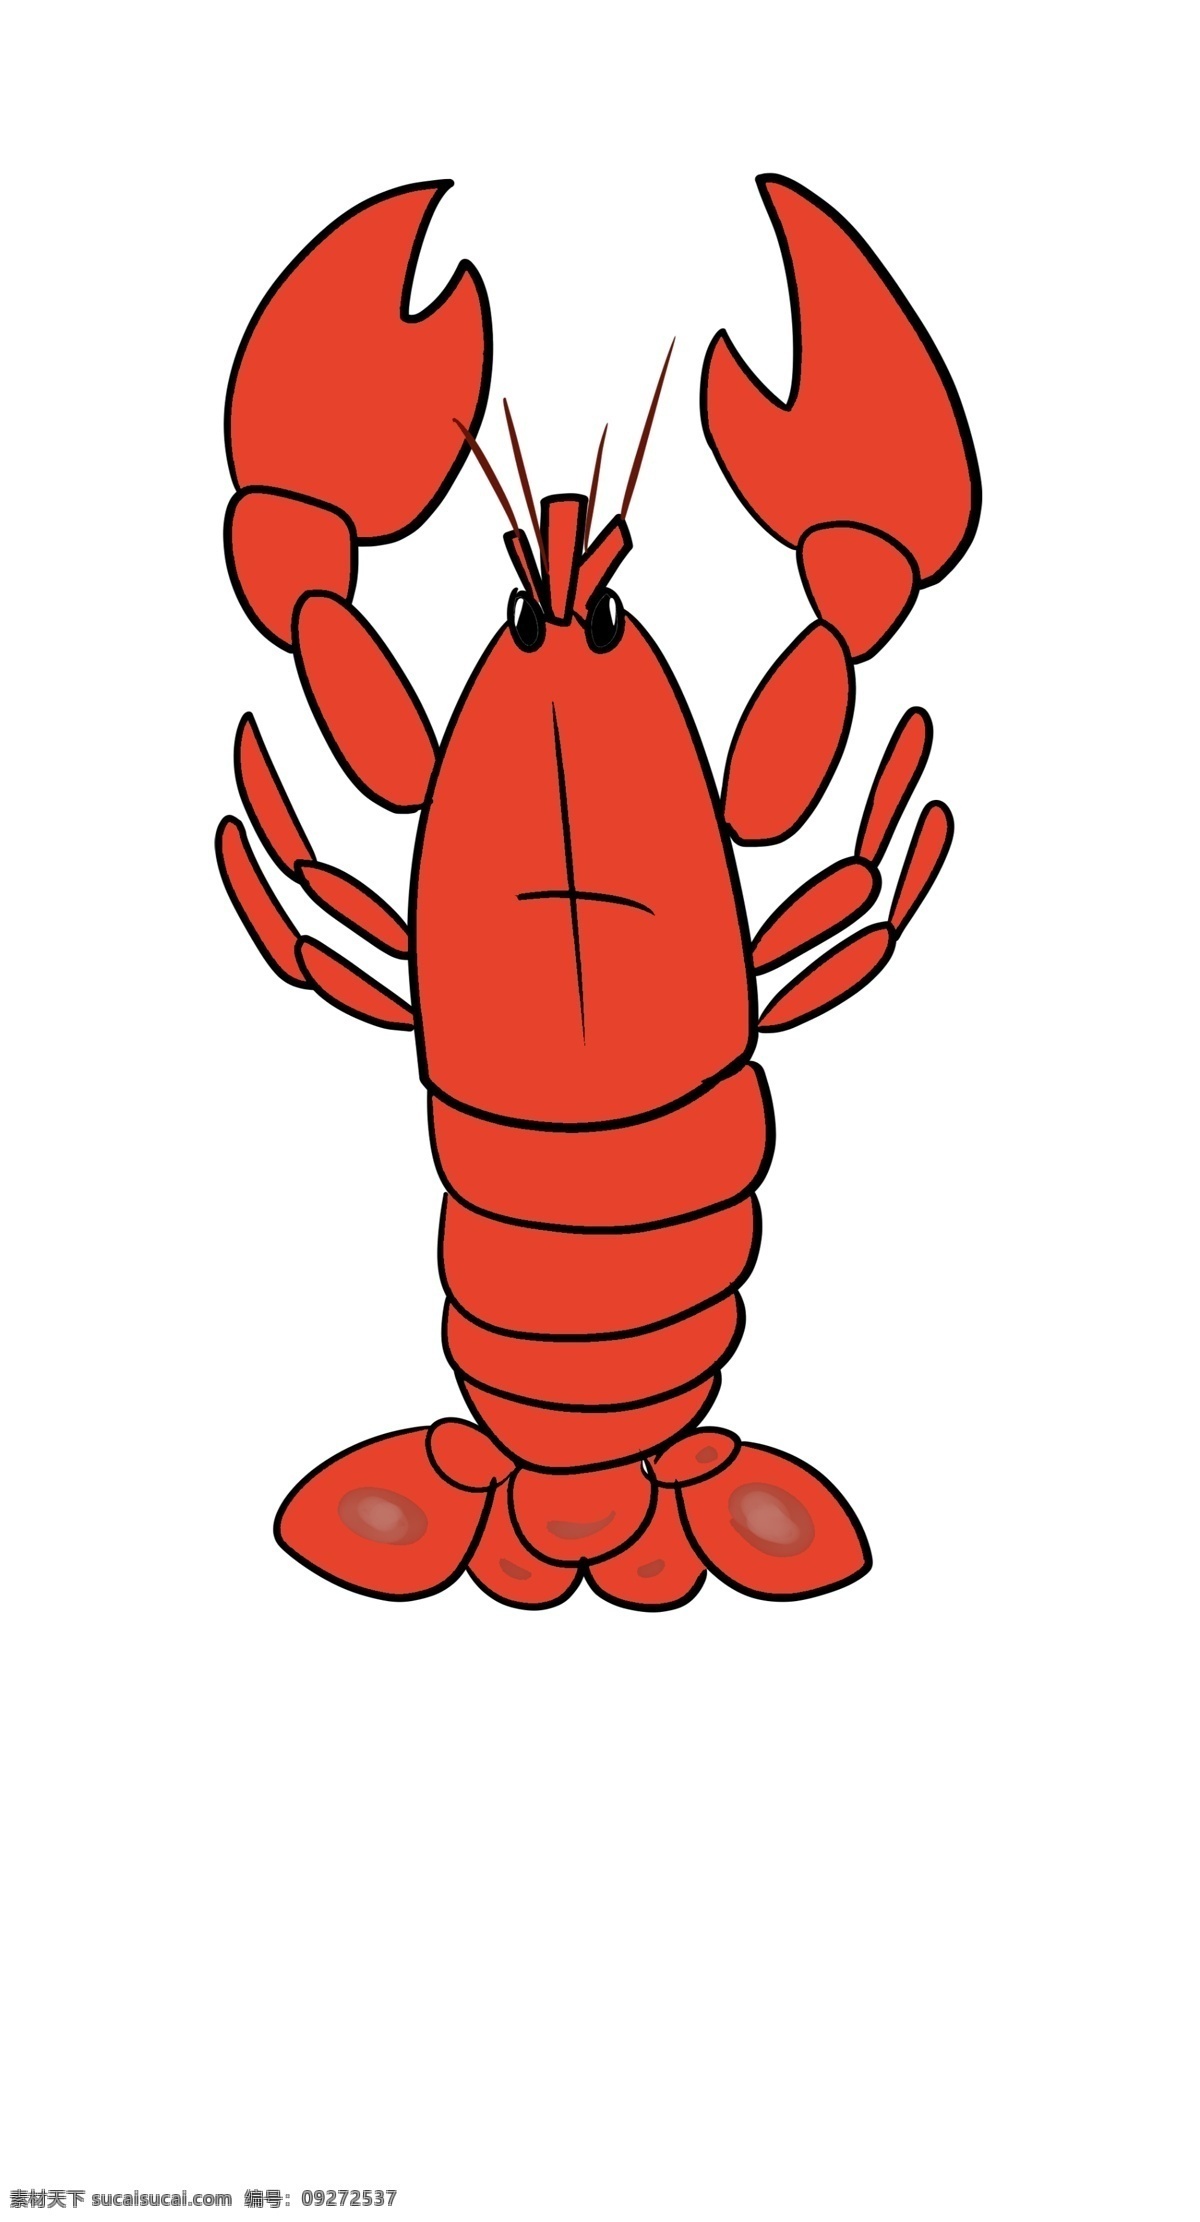 漂亮 龙虾 装饰 插画 漂亮的龙虾 红色的龙虾 创意龙虾 立体龙虾 可爱的龙虾 龙虾装饰 龙虾插画